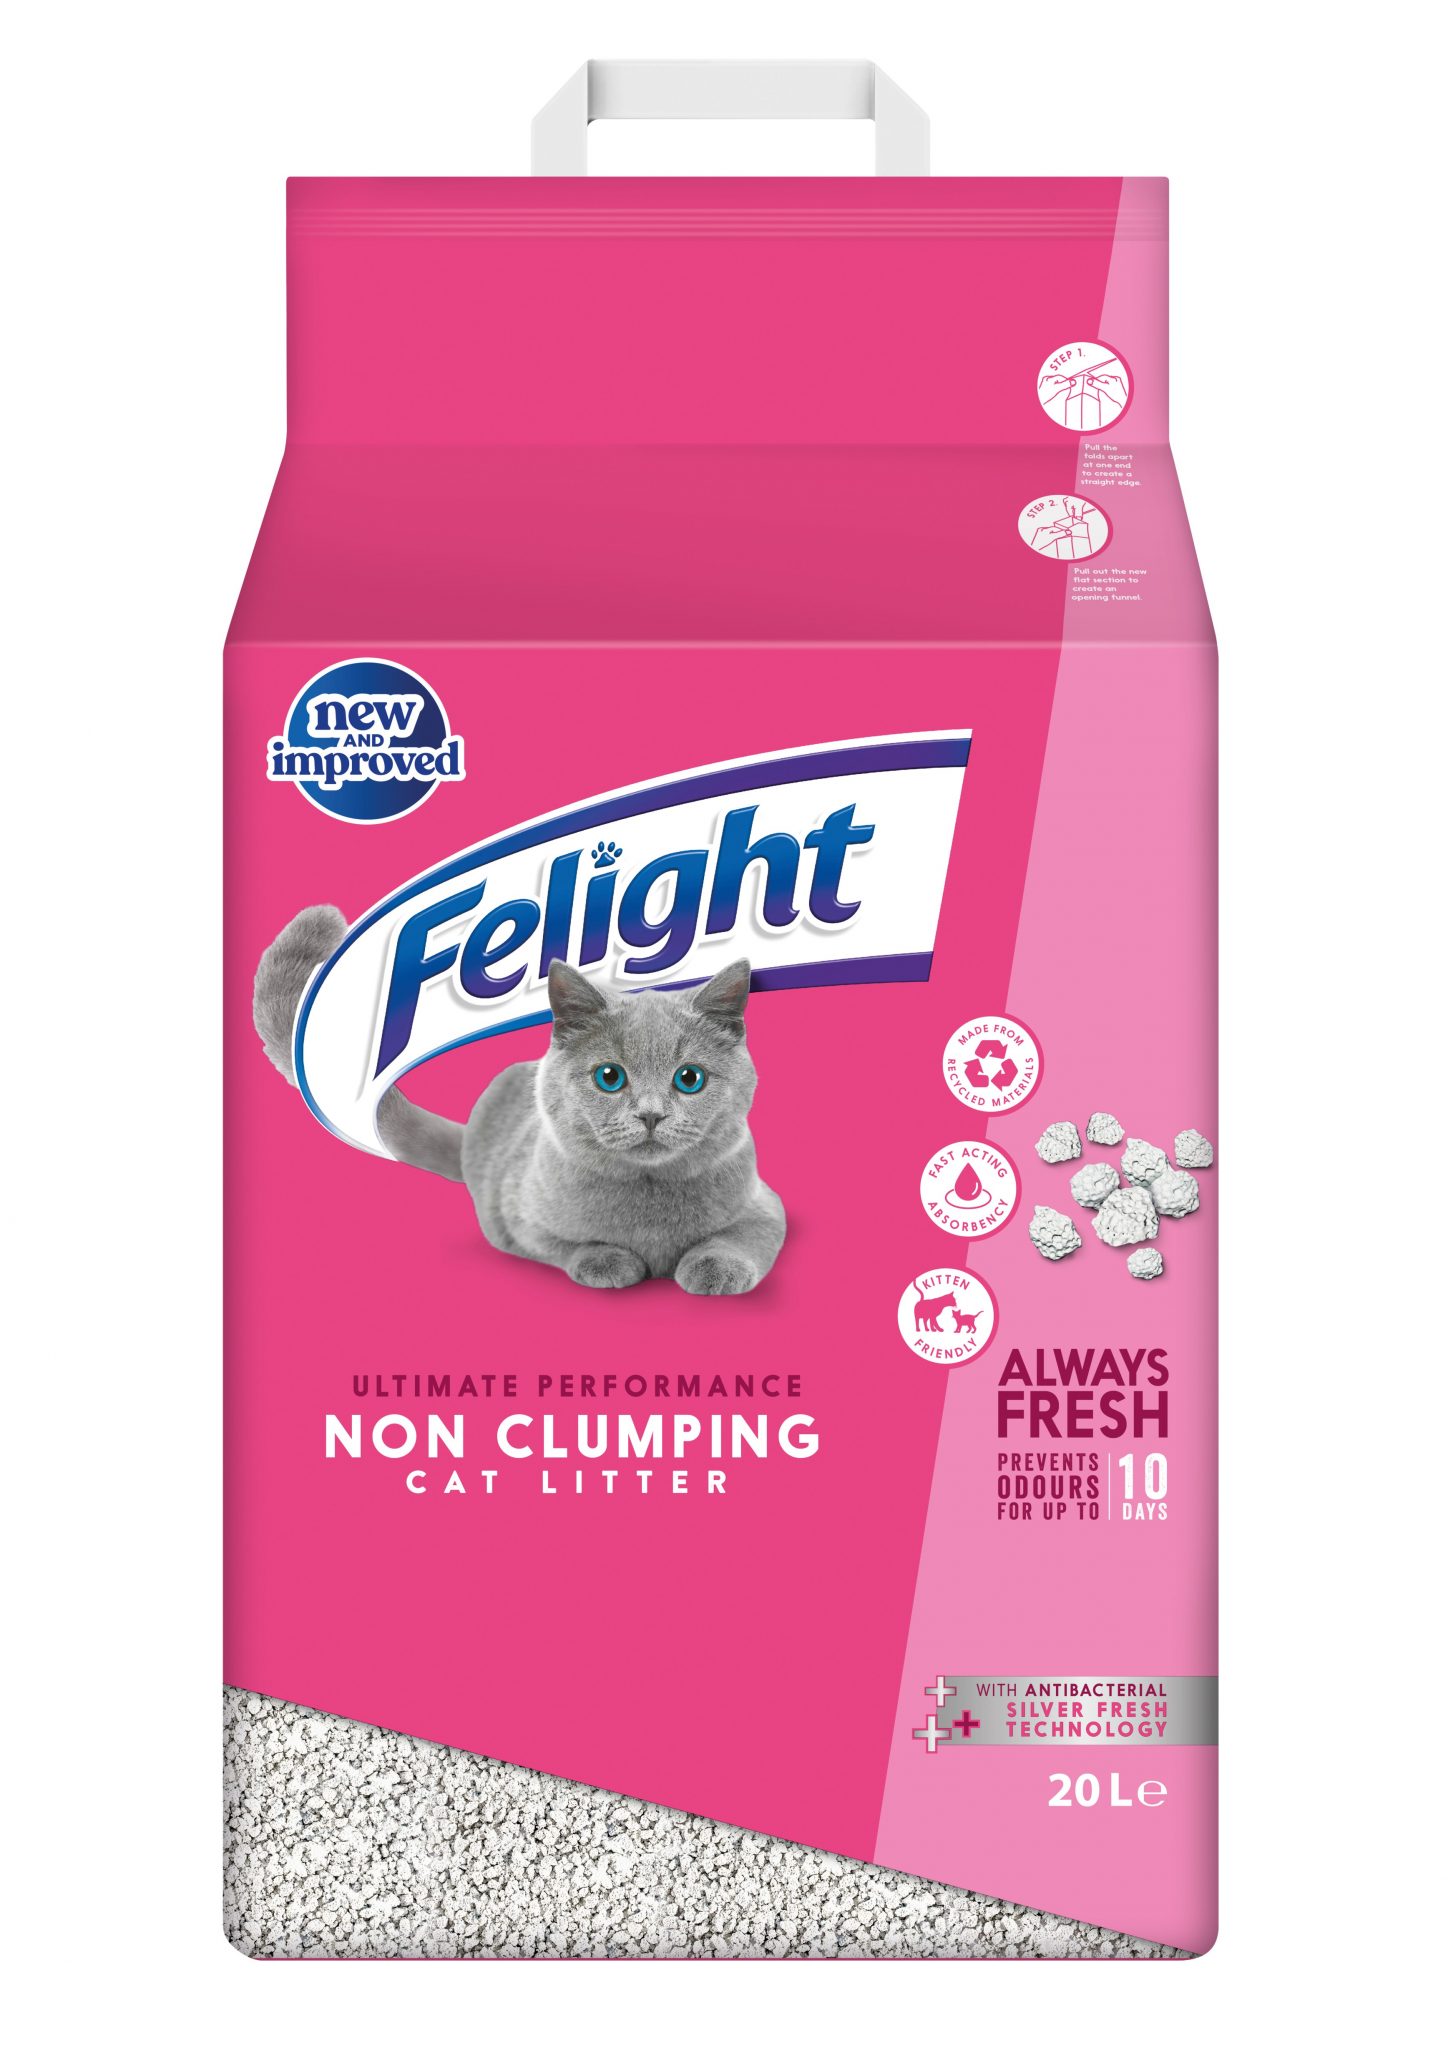 Felight Antibacterial NonClumping Cat Litter 20L Bob Martin